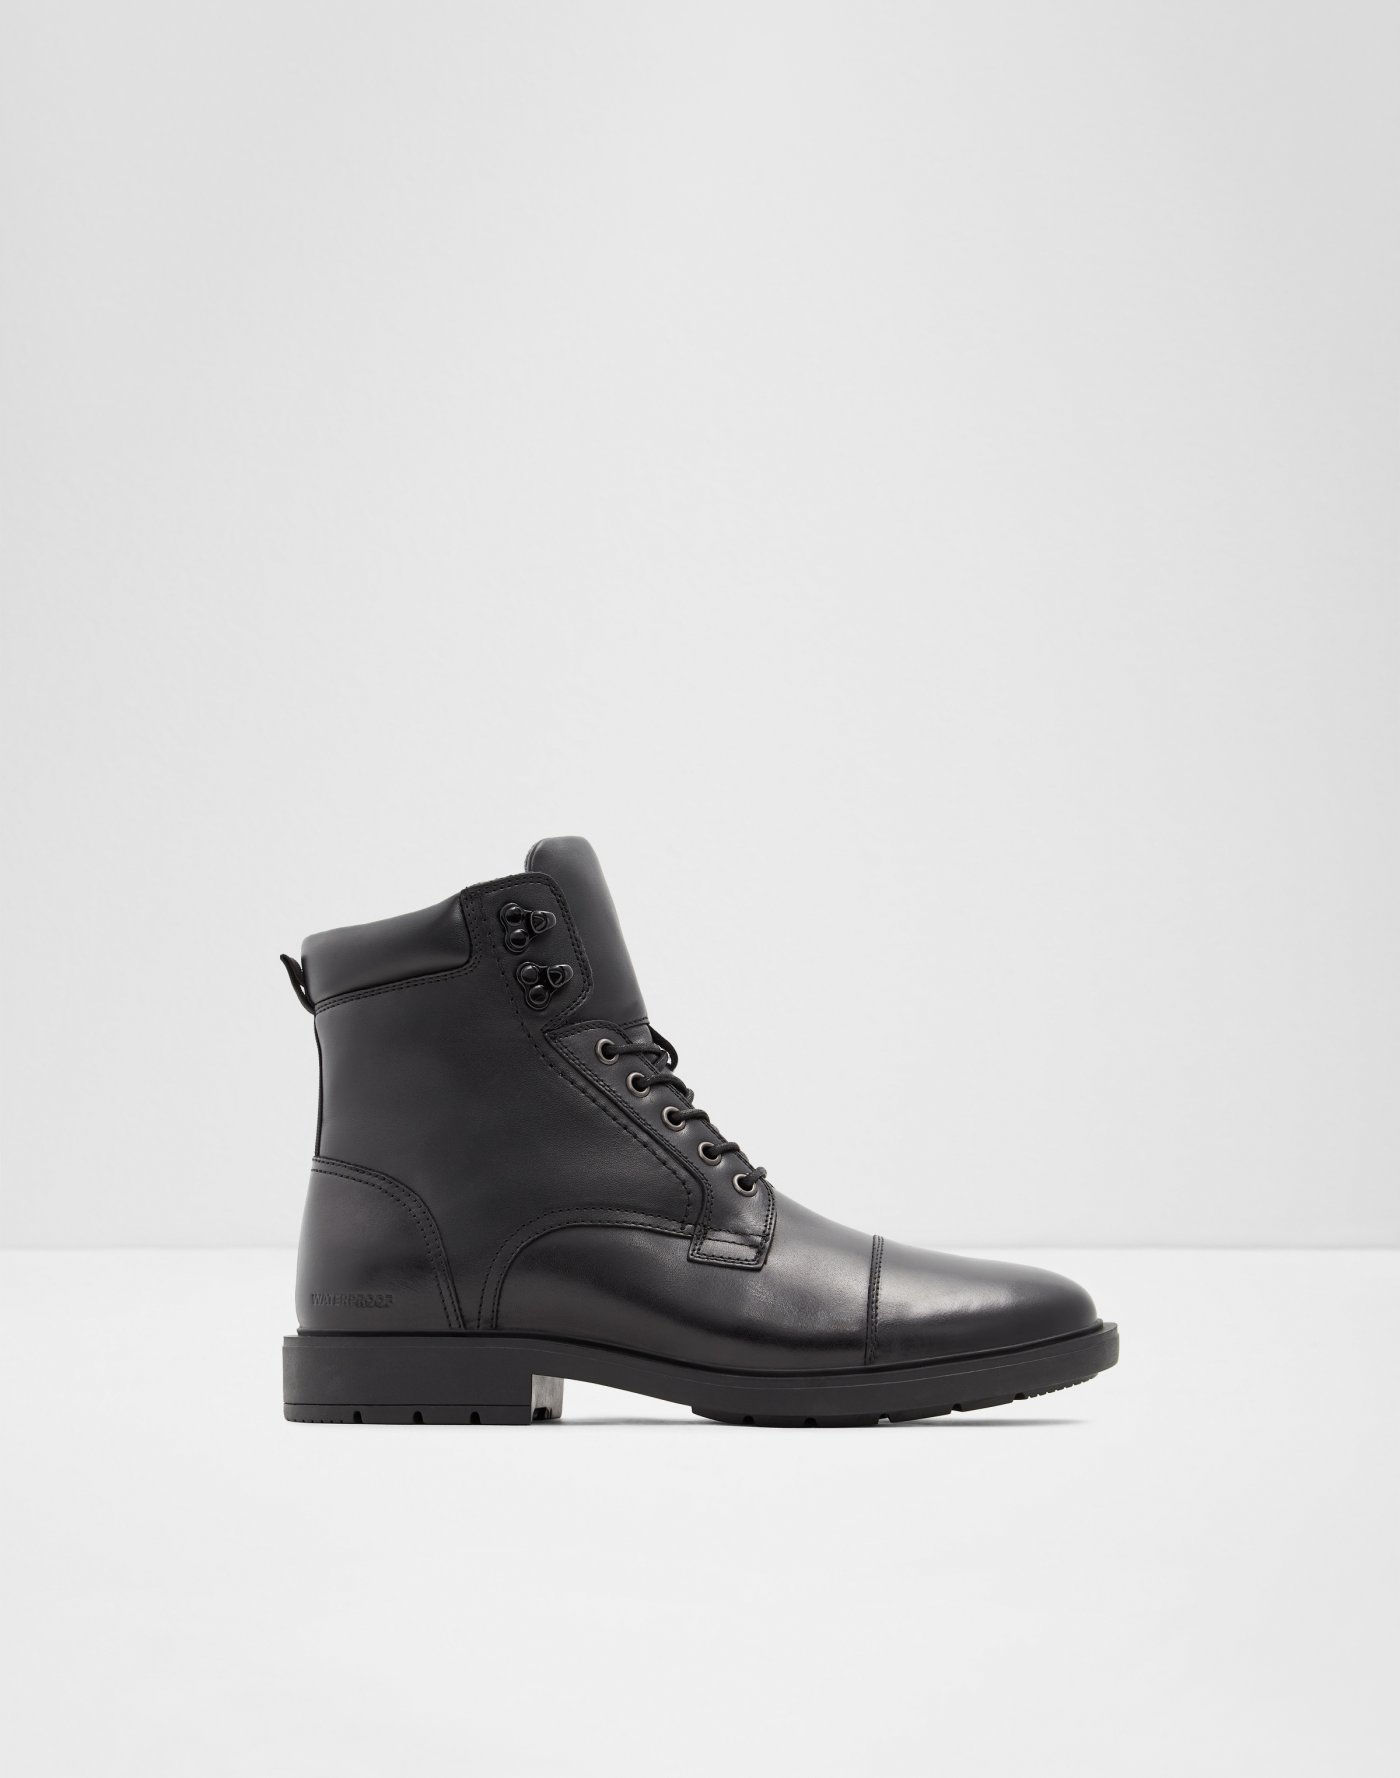 Men's Boots Outlet | ALDO US